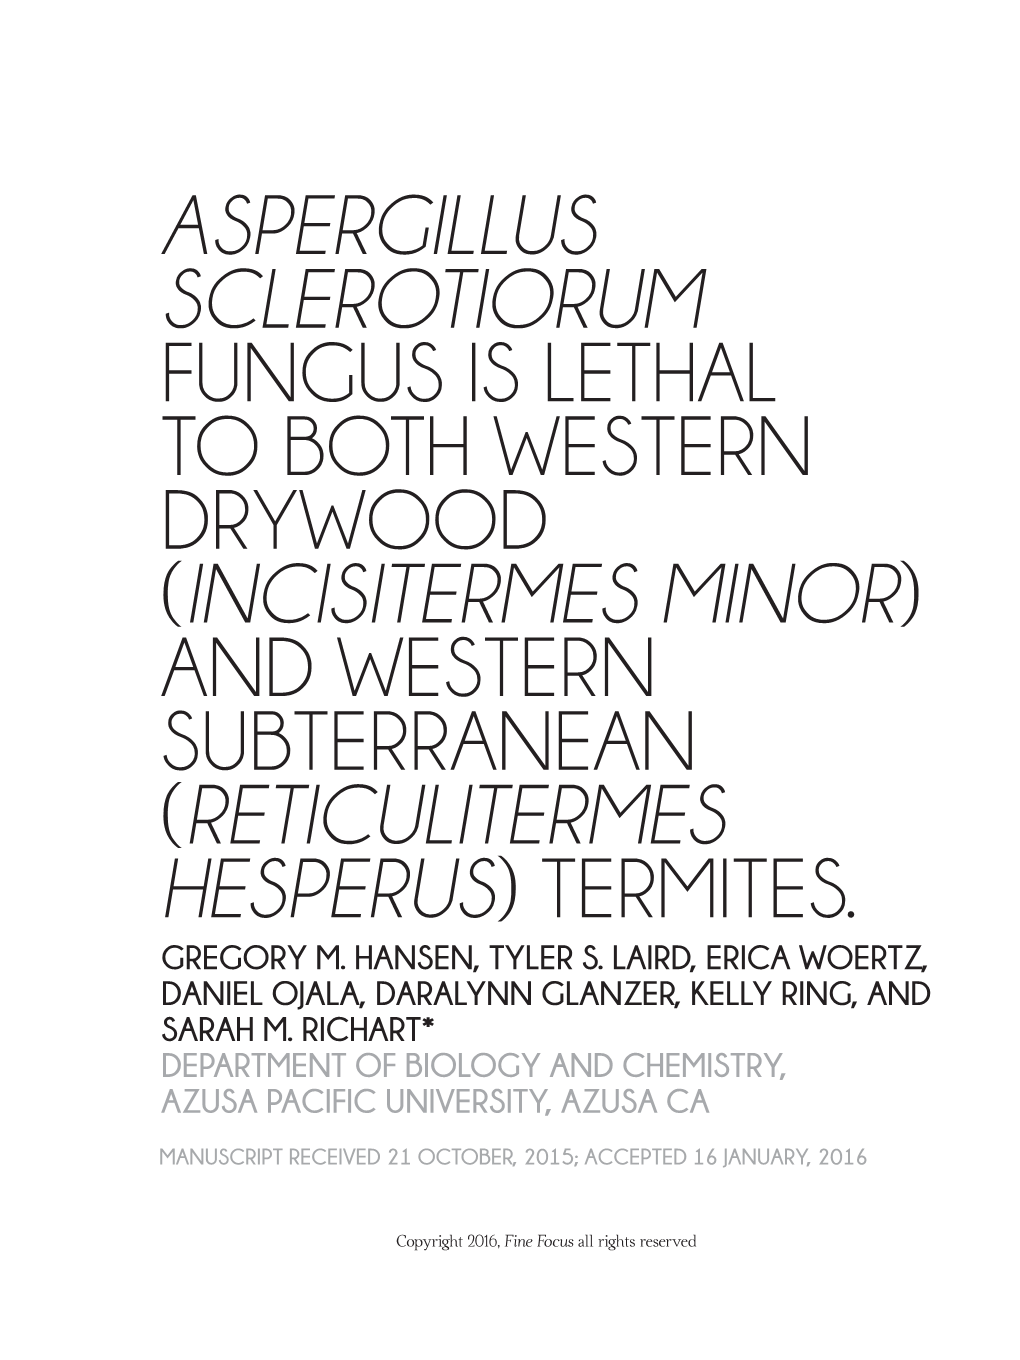 Aspergillus Sclerotiorum Fungus Is Lethal to Both Western Drywood (Incisitermes Minor) and Western Subterranean (Reticulitermes Hesperus) Termites